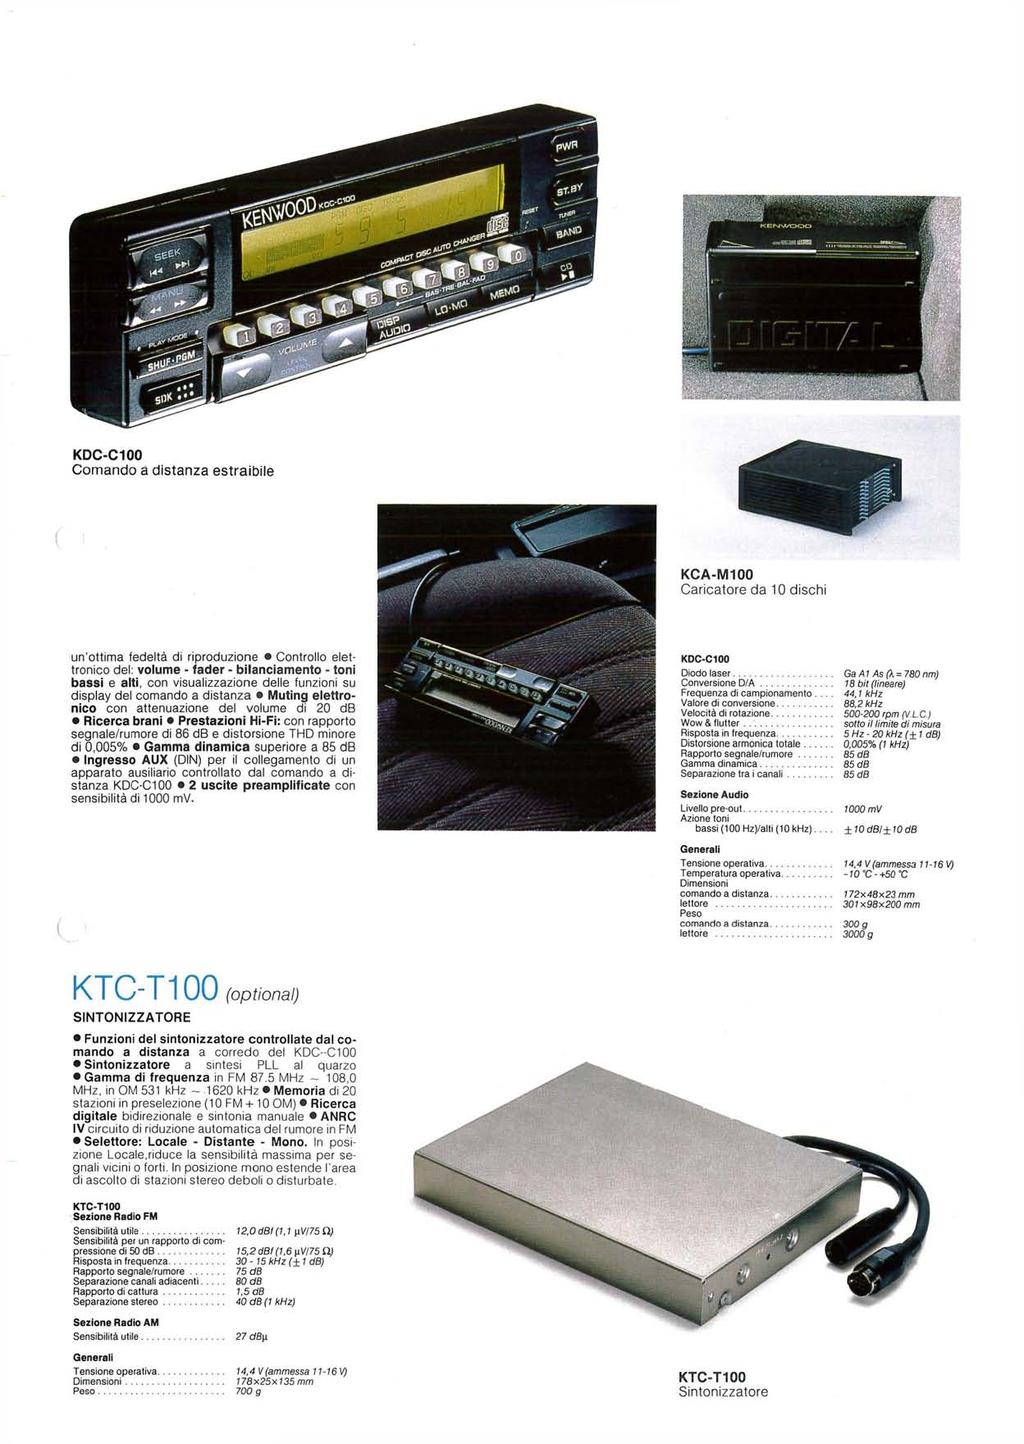 KDCC100 Comando a distanza estraibile KCAM100 Caricatore da 10 dischi un'ottima fedeltà di riproduzione Controllo elettronico del: volume fader bilanciamento toni bassi e alti, con visualizzazione